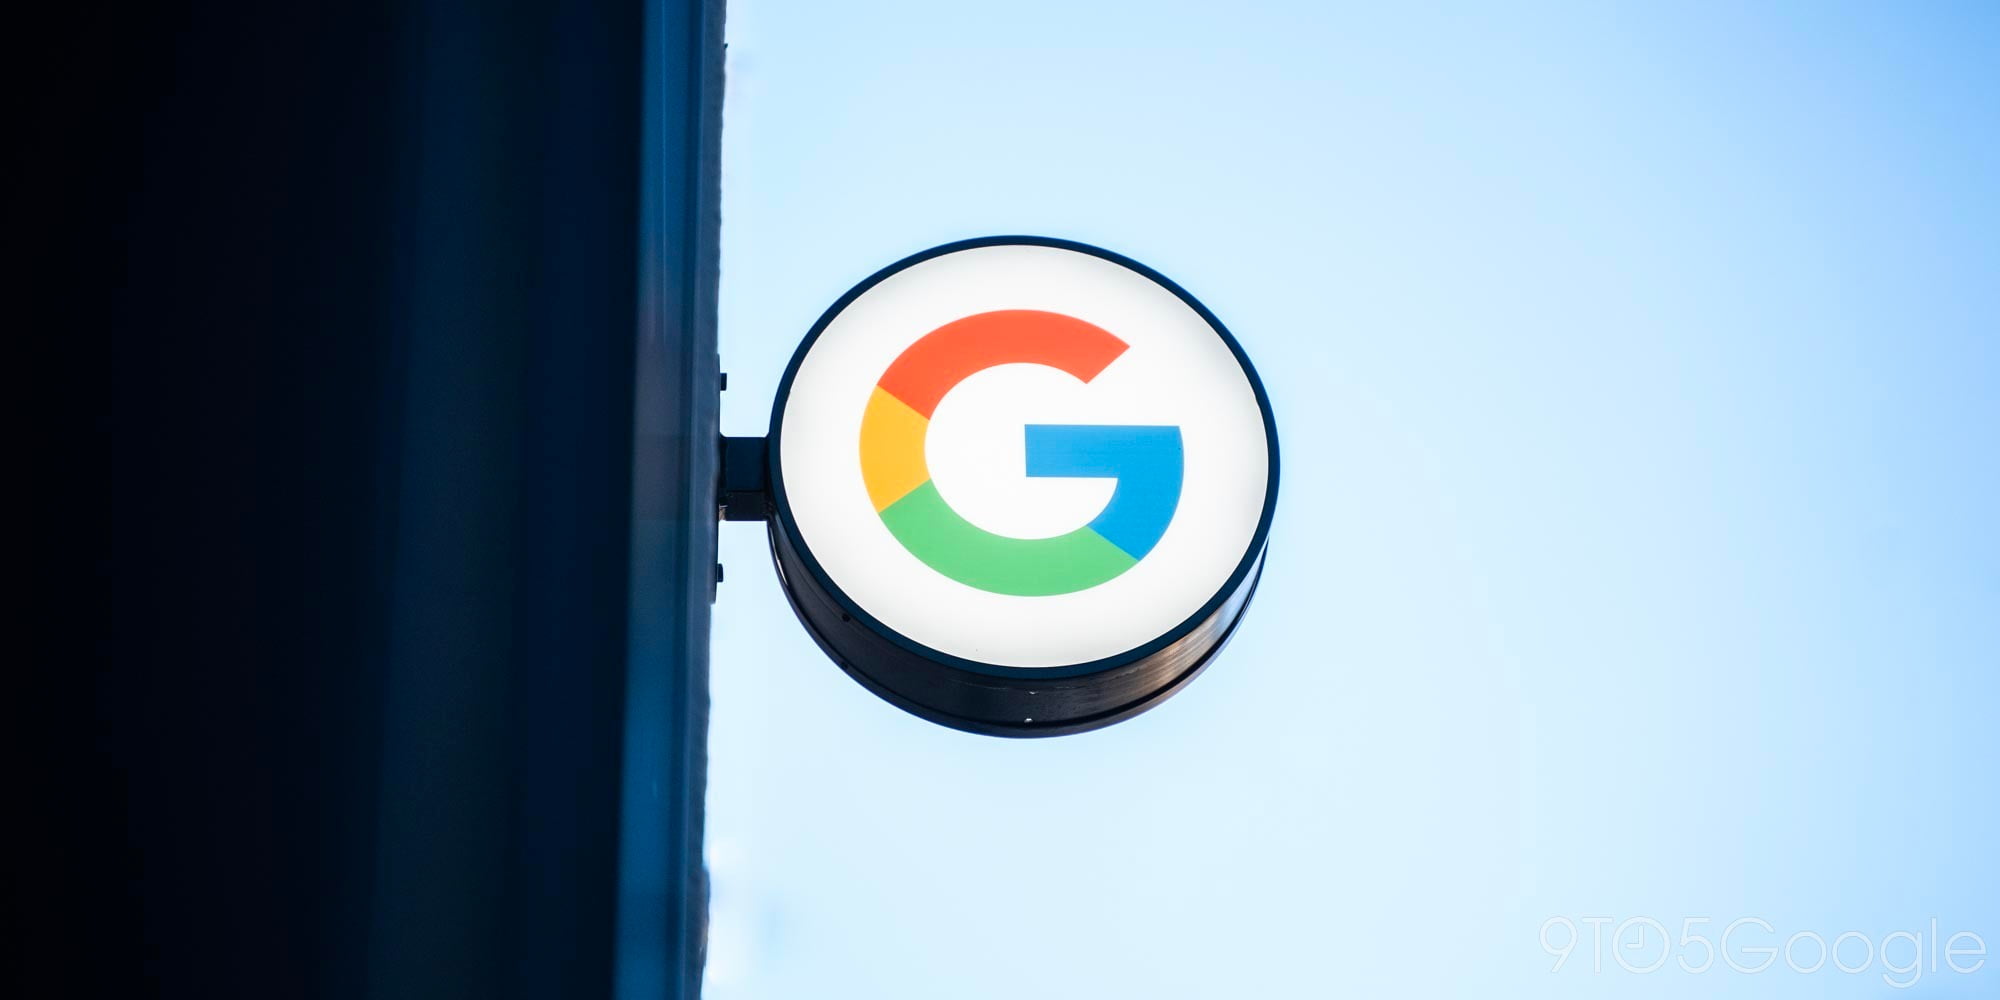 google pixel 4a leaked design